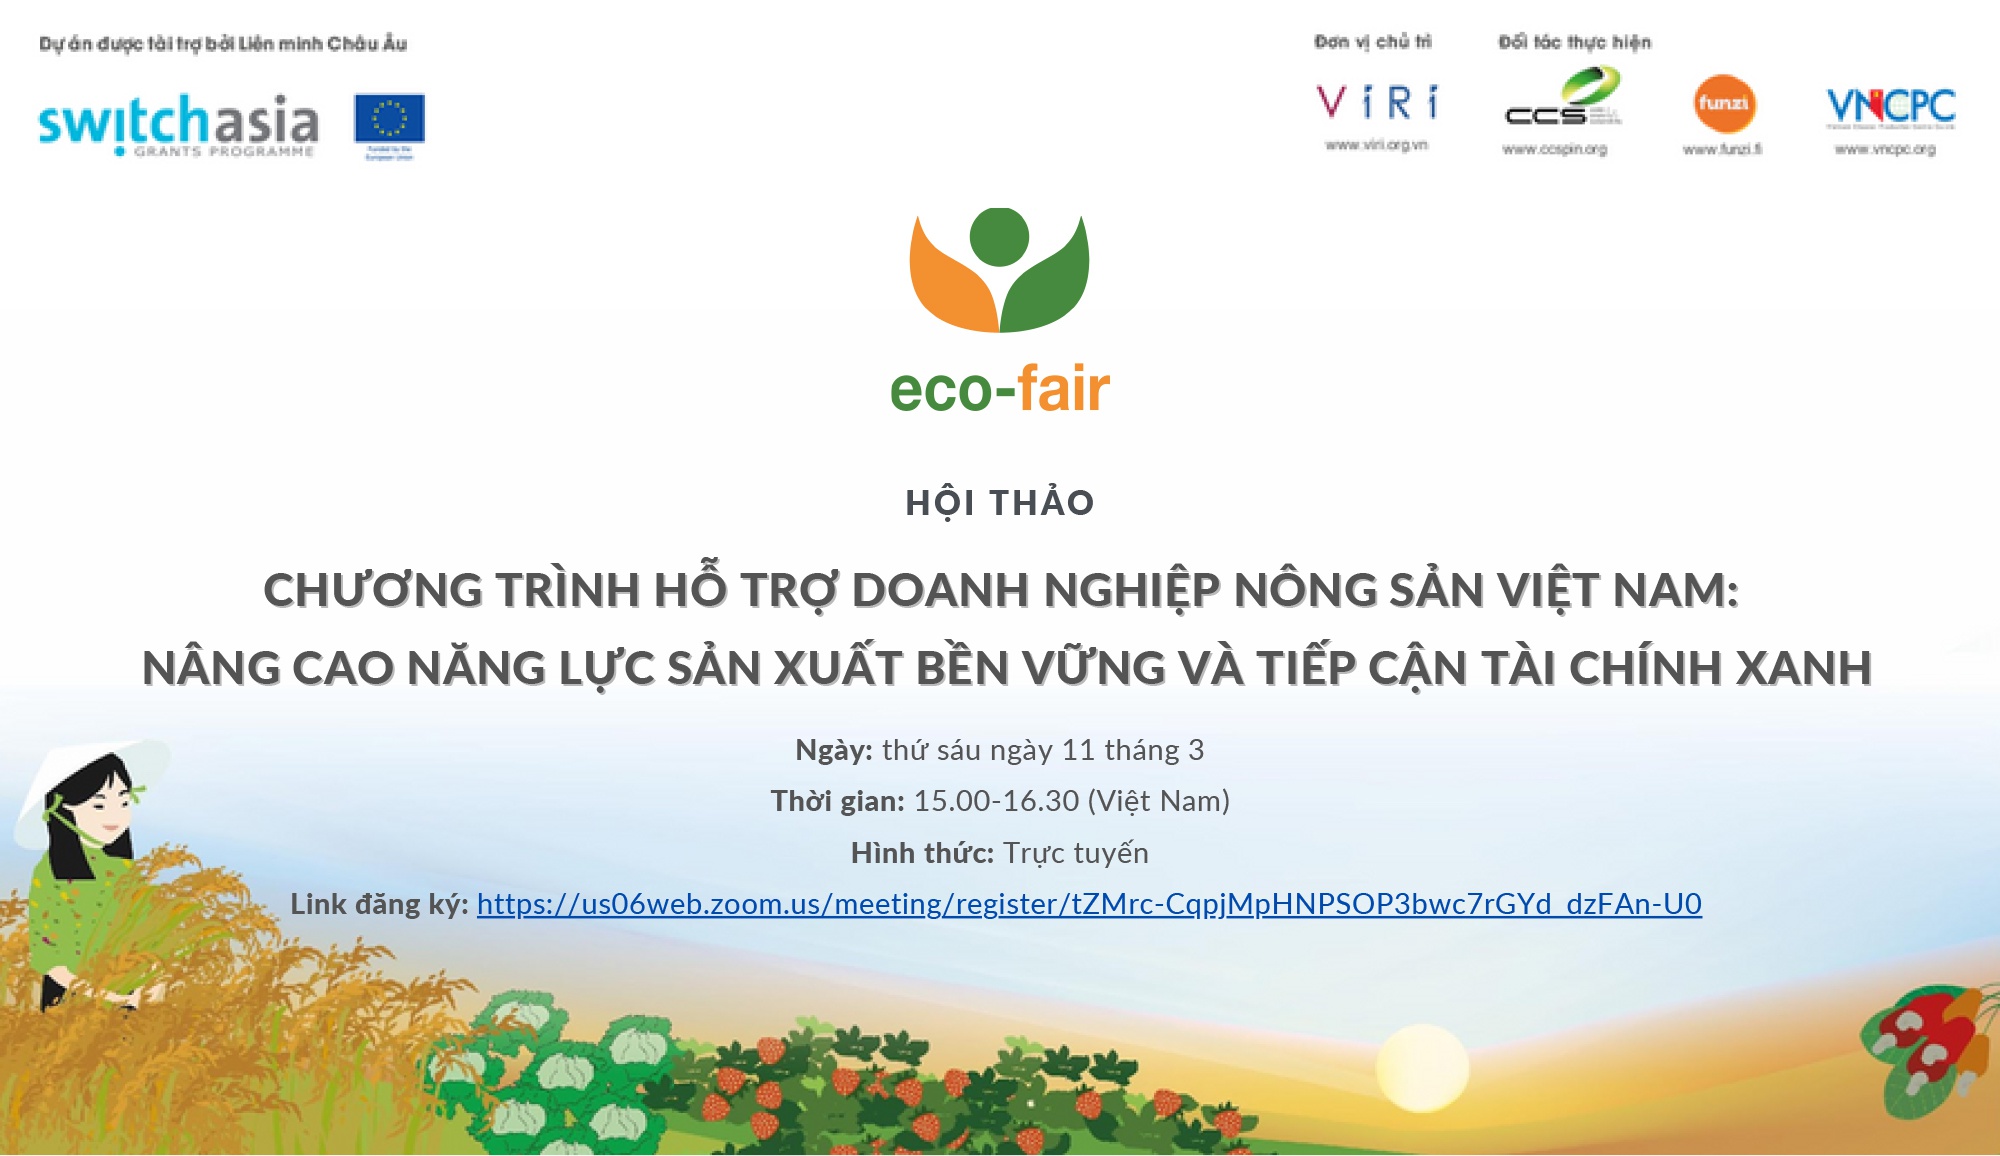 Doanh nghiệp nông sản Việt được đào tạo miễn phí về sản xuất bền vững - ảnh 1